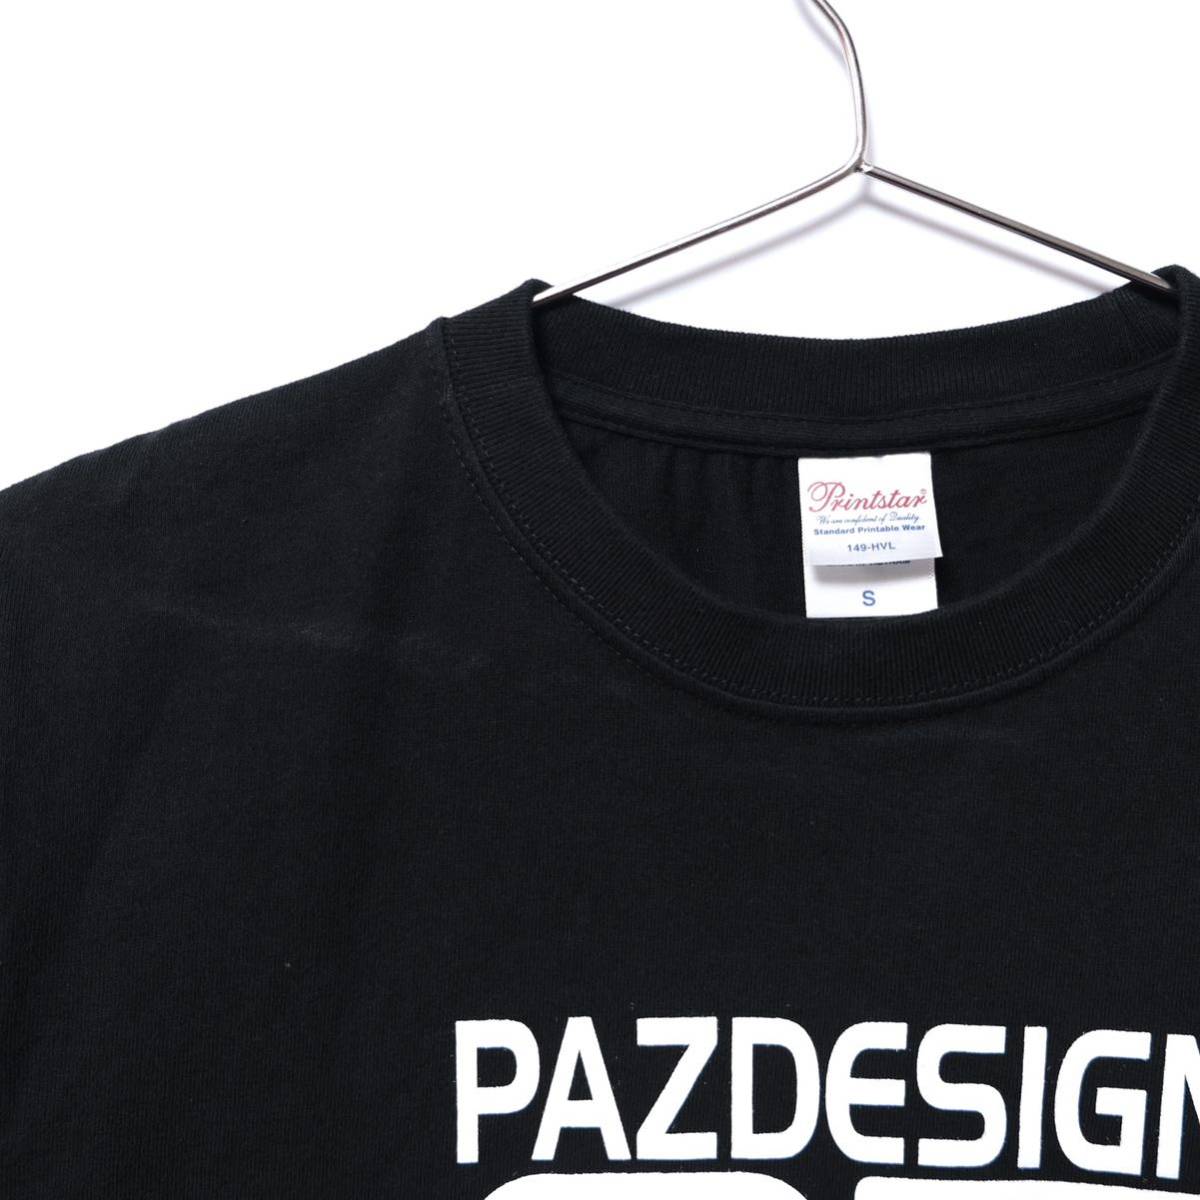 【送料無料】パズデザイン|Pazdesign 25thビッグロゴロングスリーブTシャツ|長袖|フィッシング|釣り|ブラック/ホワイト|Sサイズ_画像2